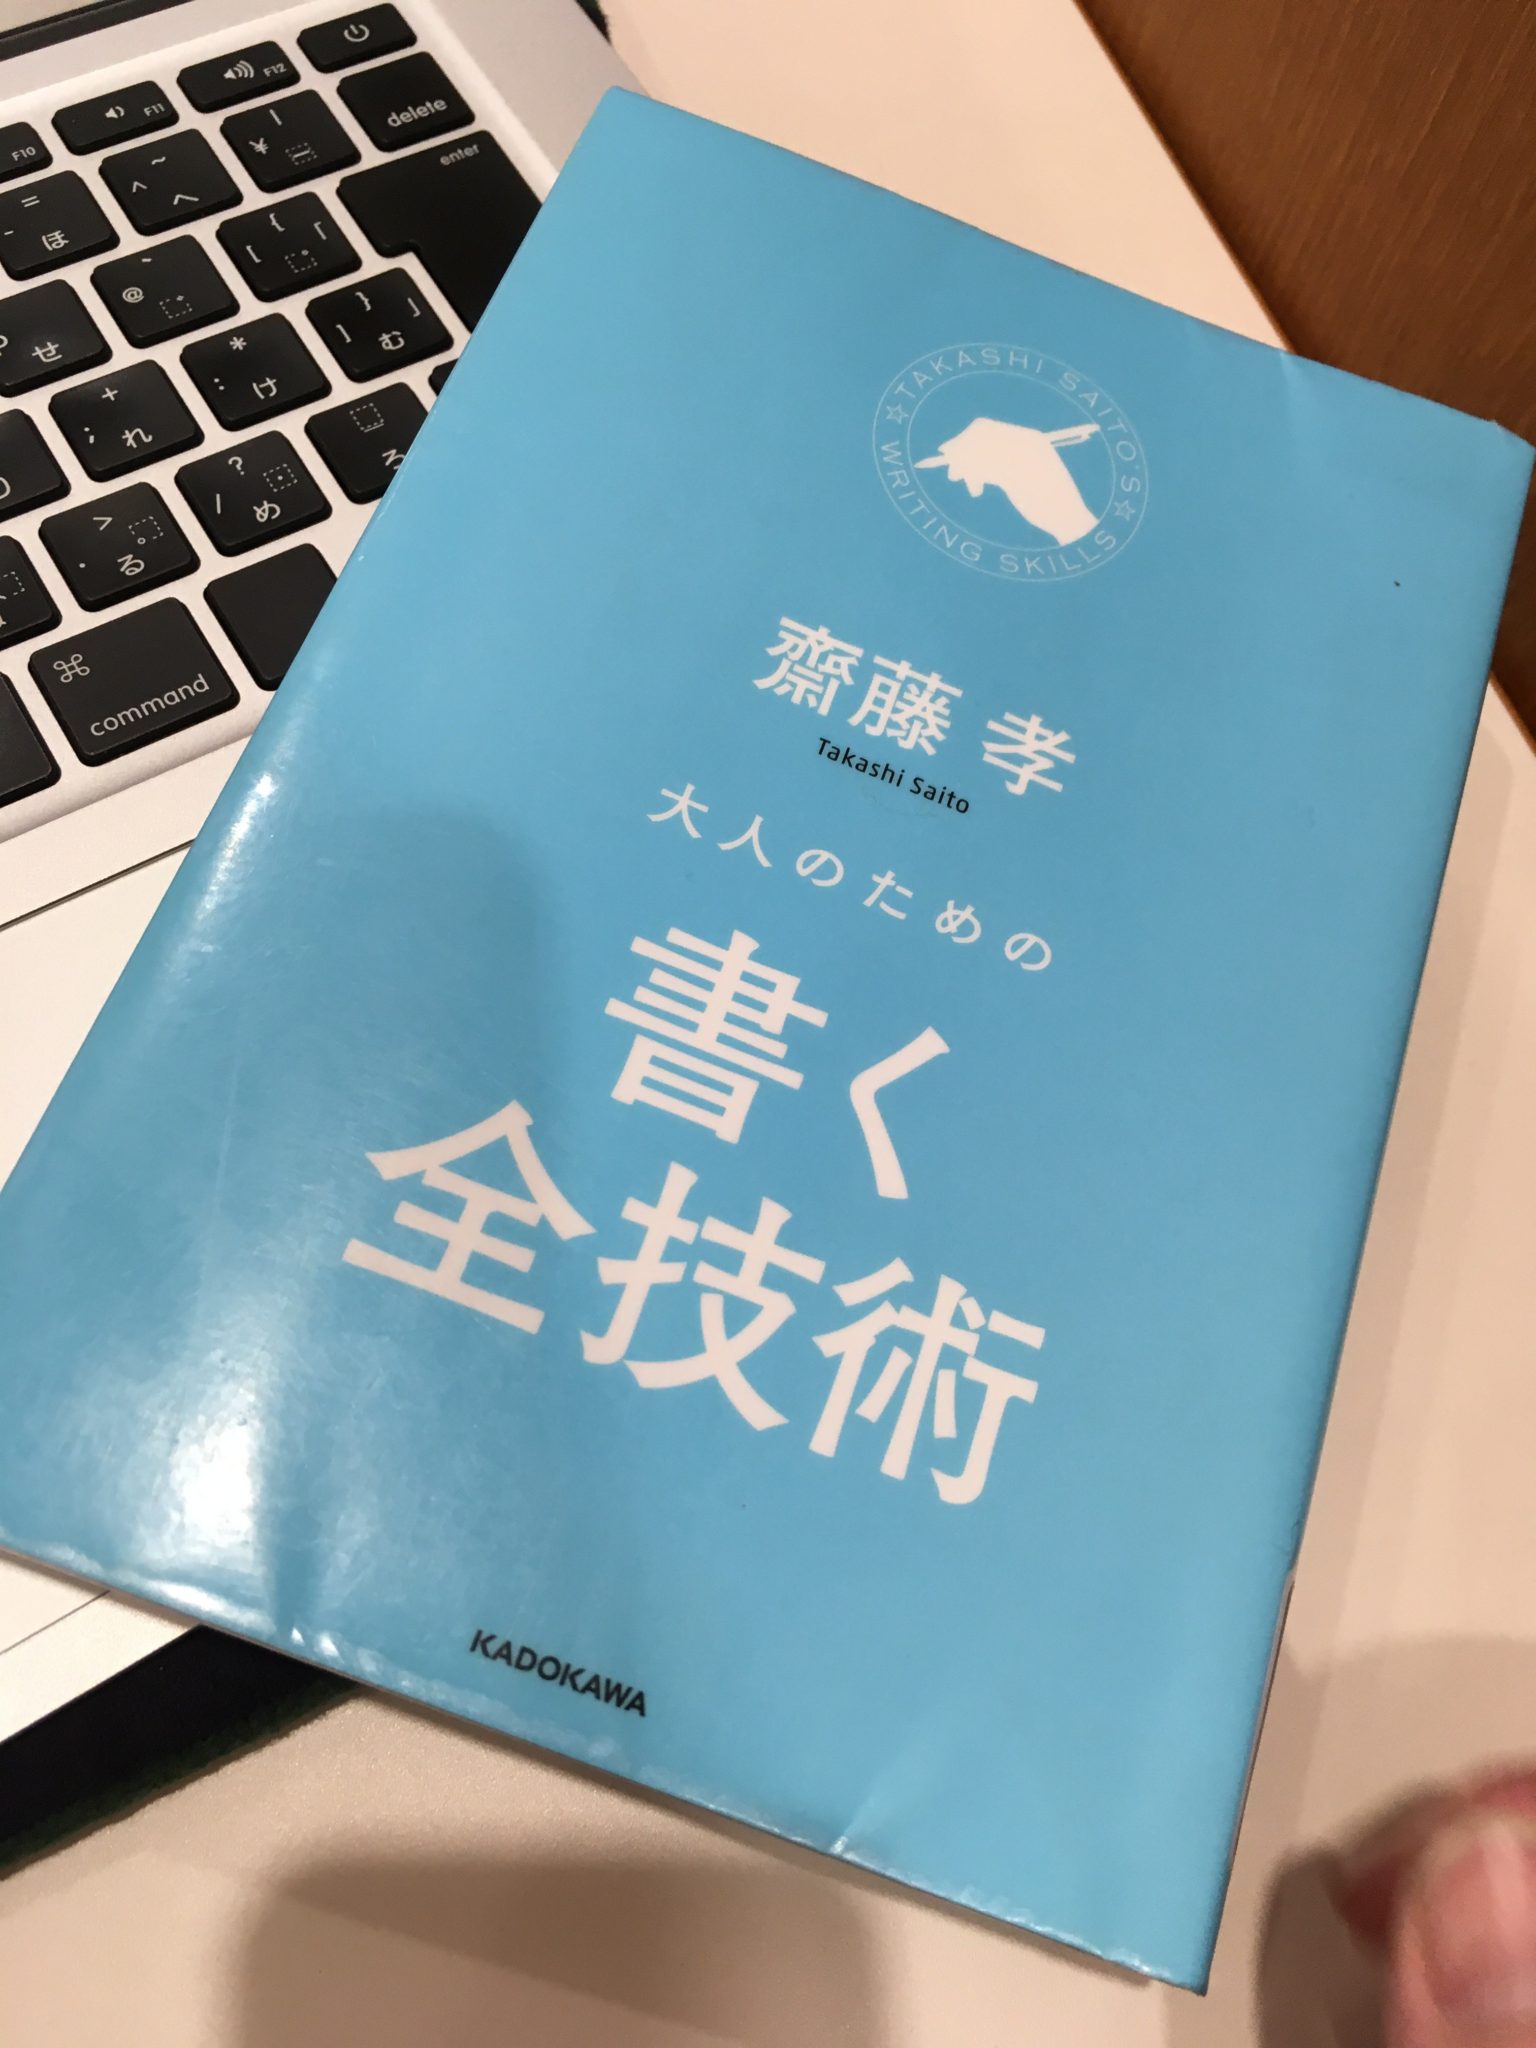 斎藤孝さんの「大人のための書く全技術」を読みました。